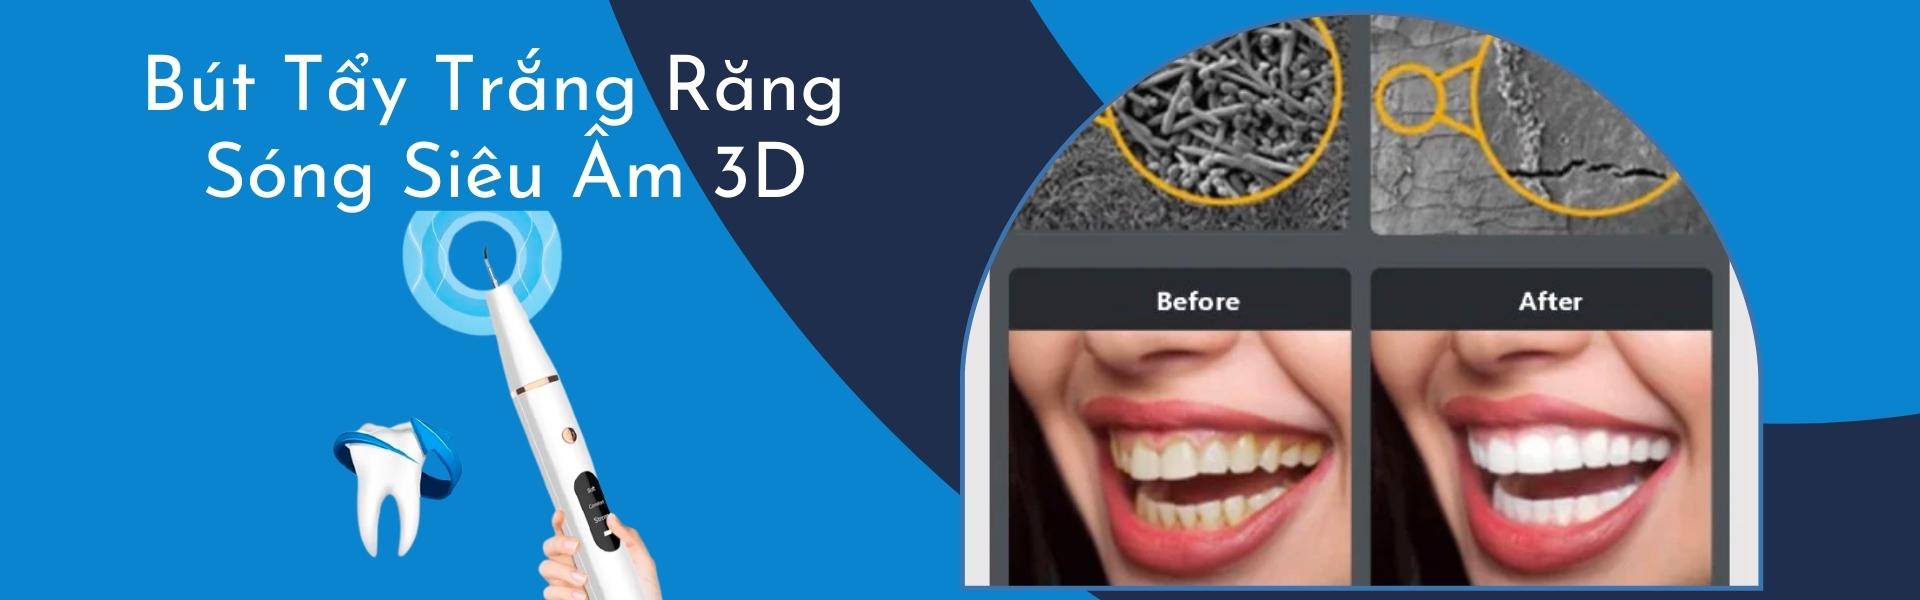 Chăm sóc răng bằng Bút tẩy trắng răng nha khoa bằng sóng siêu âm 3D - Super White